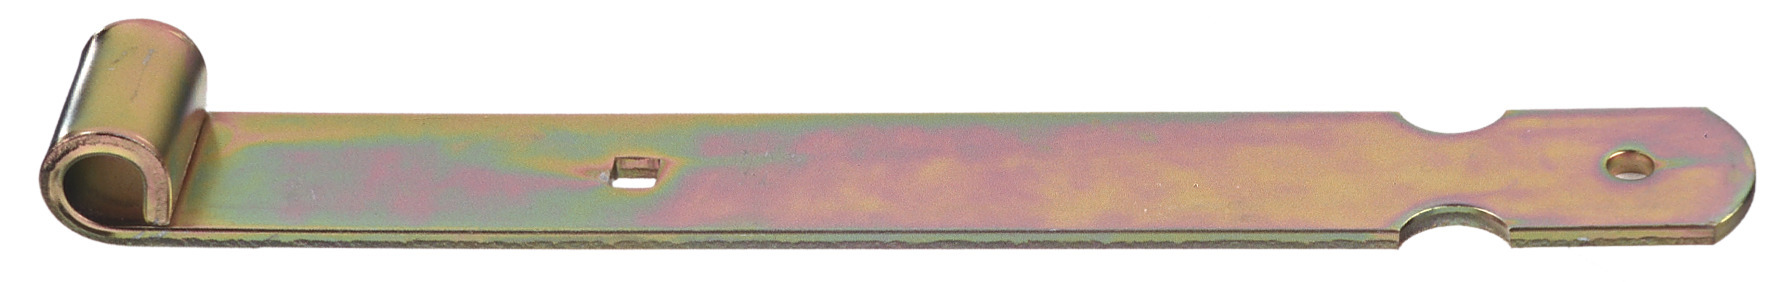 Conmetall Ladenbänder 13×700 mm